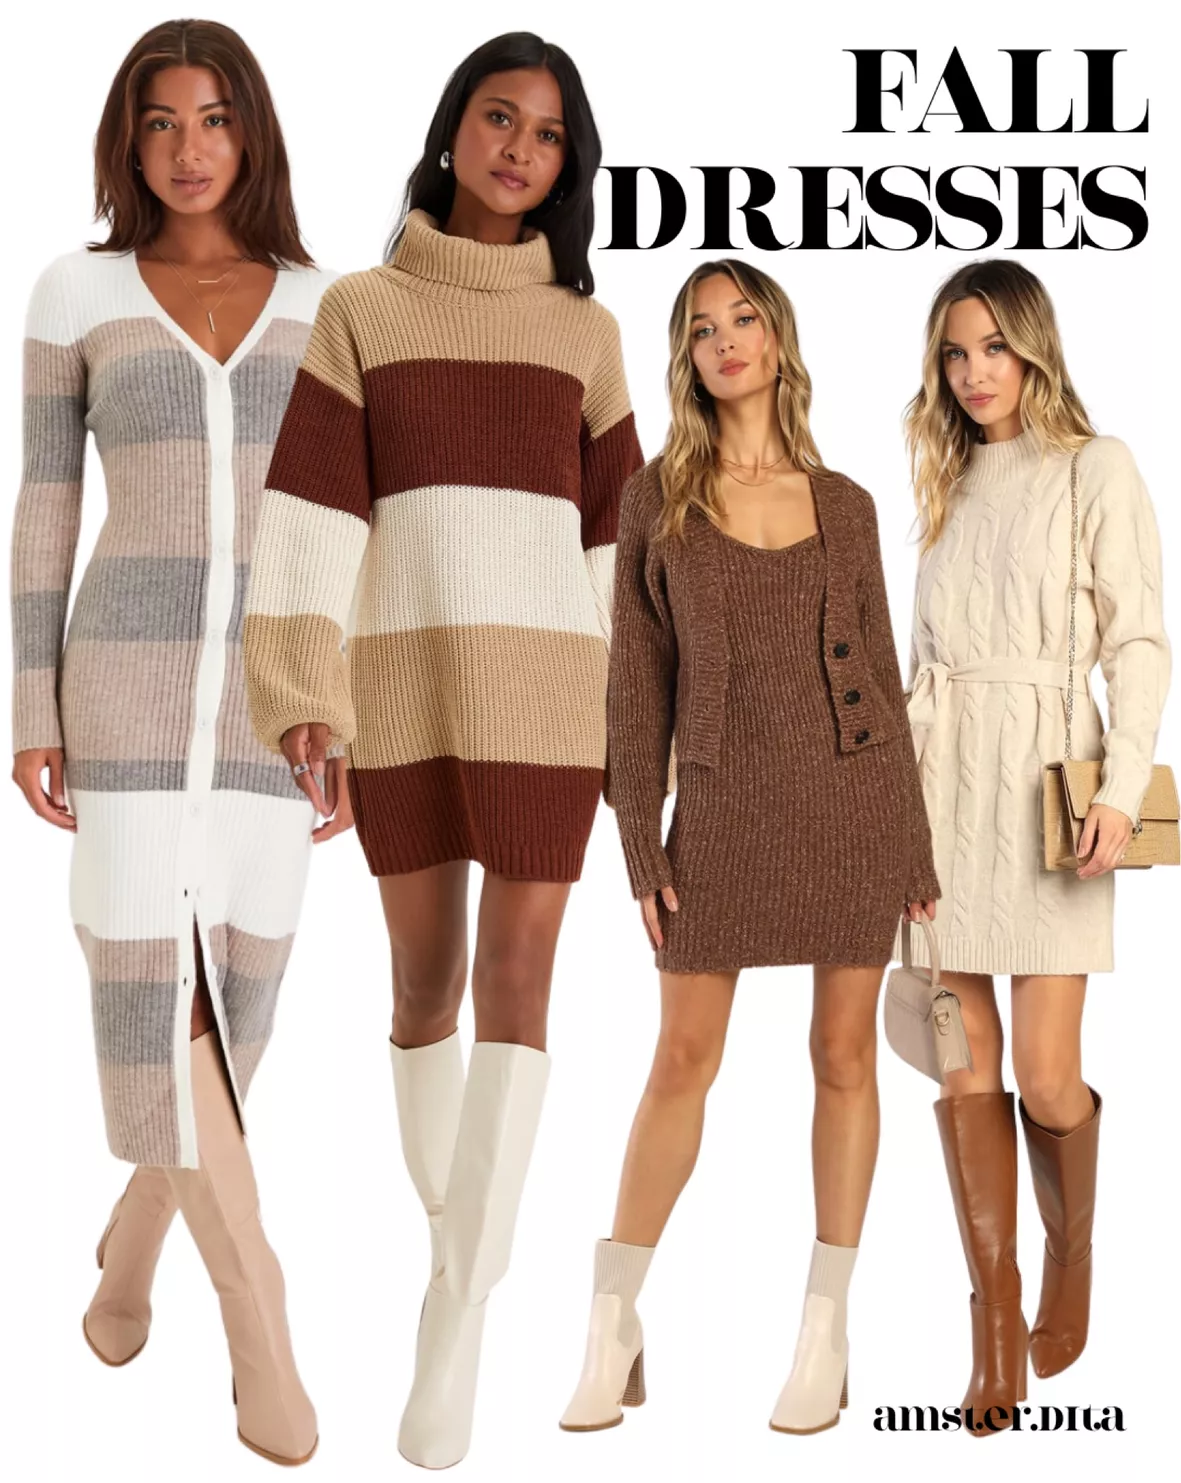 Dress - Beige wool dress